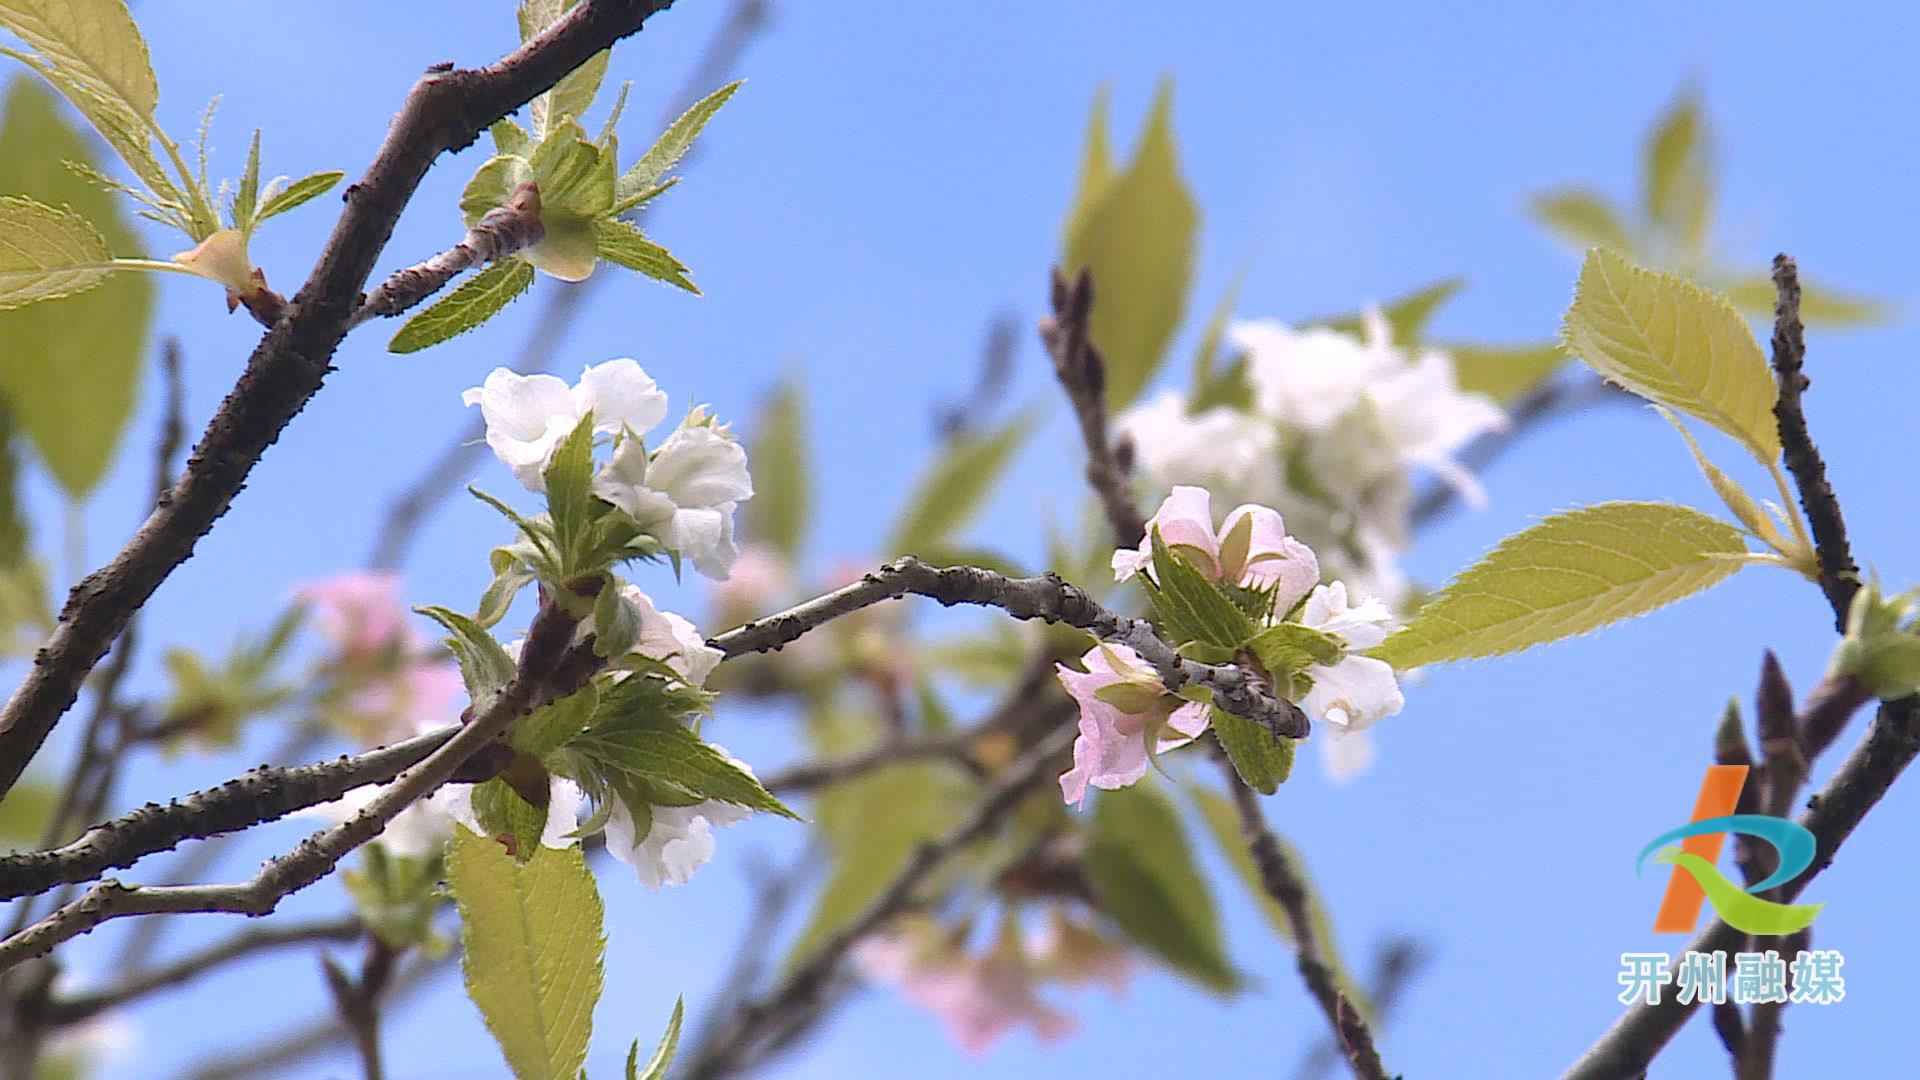 滨湖公园的多种花卉错季开放 形成了现在是春天的假象！‘NG官网APP下载’(图4)